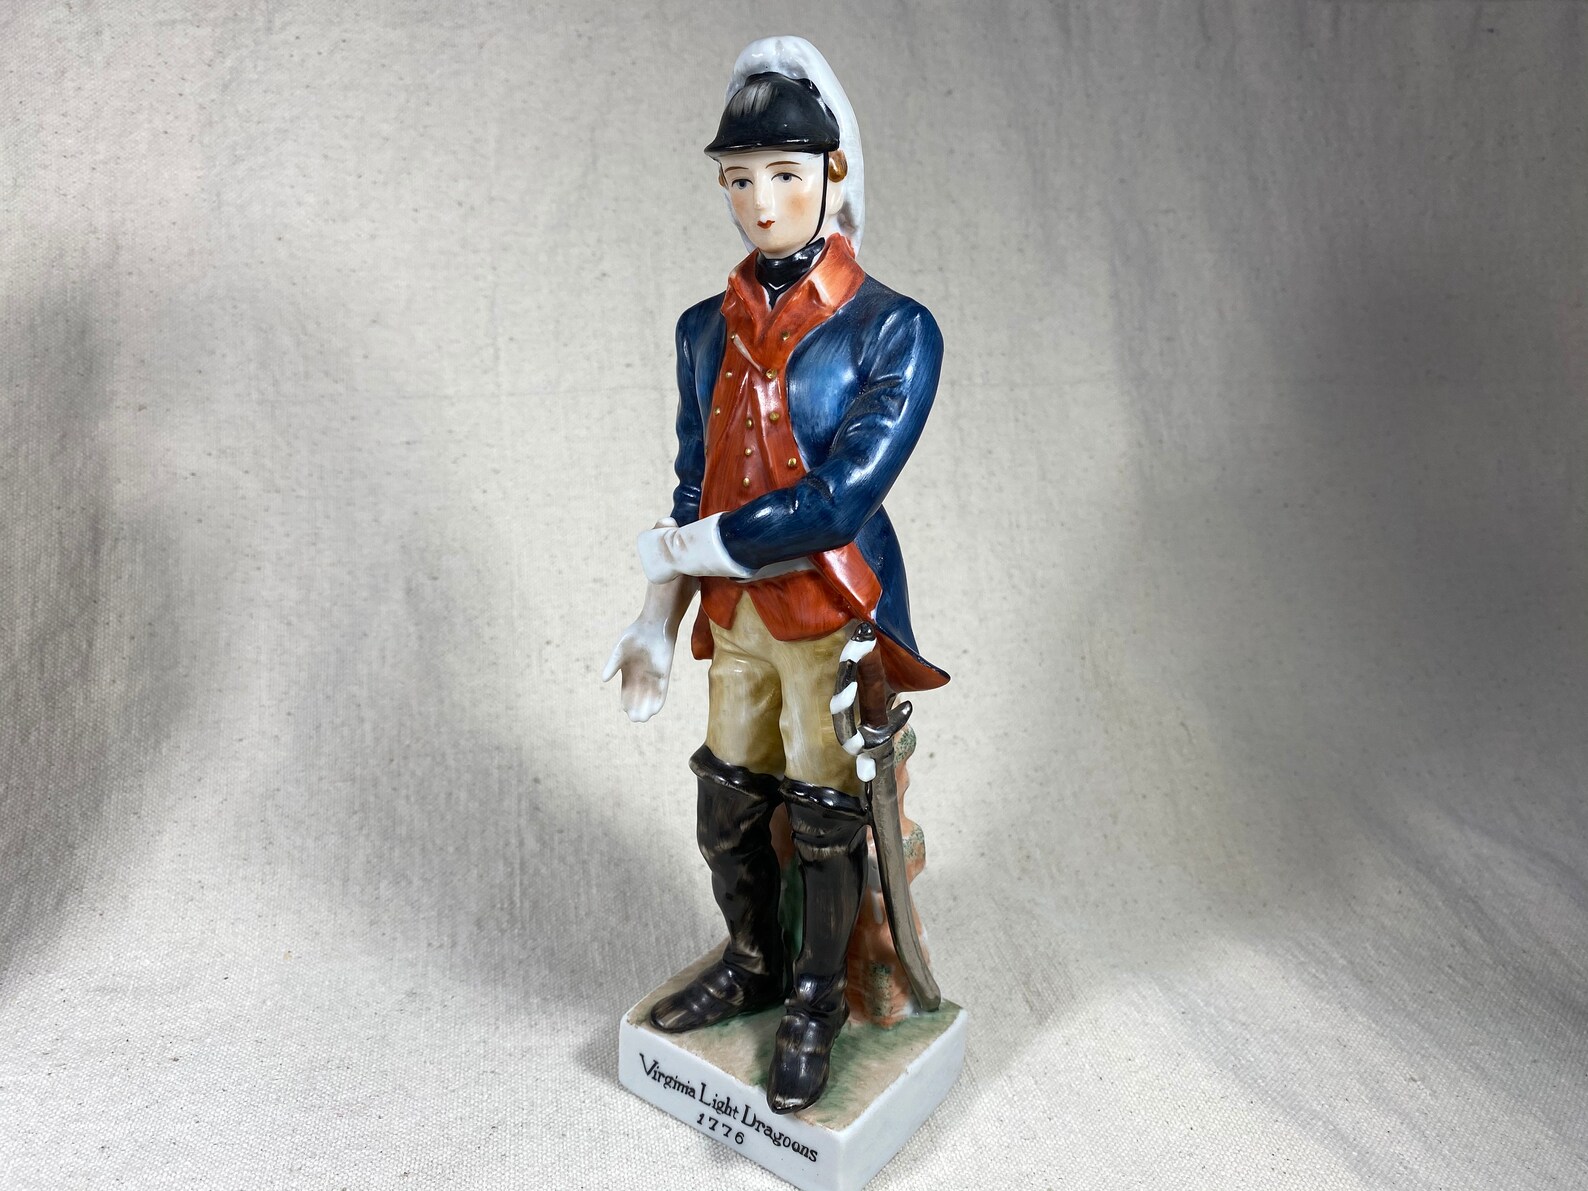 Vintage Revolutionary War Soldier Porcelain Figurines Andrea | Etsy